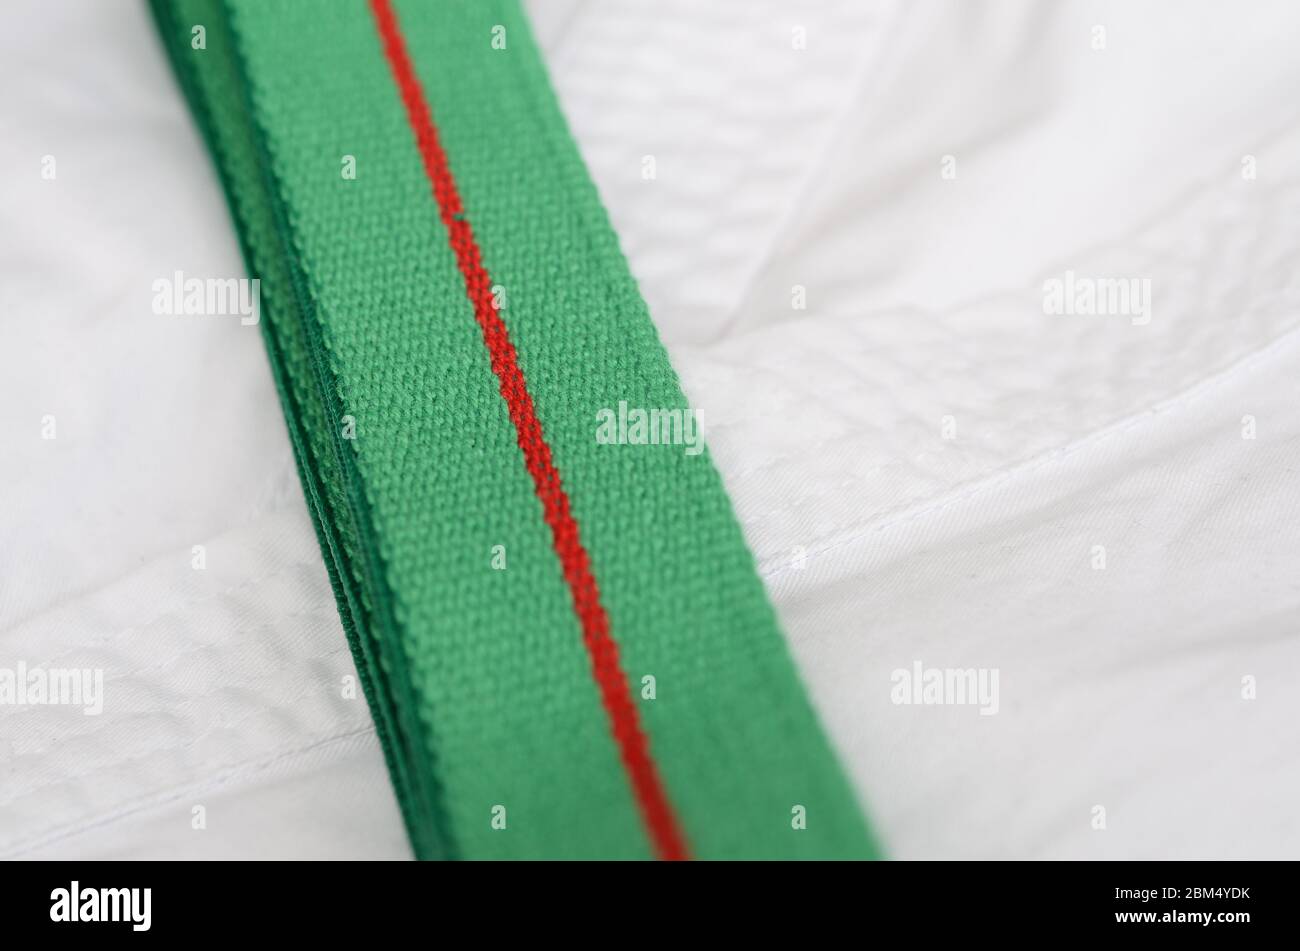 équipement de karaté : ceinture verte sur kimono sur fond clair Banque D'Images